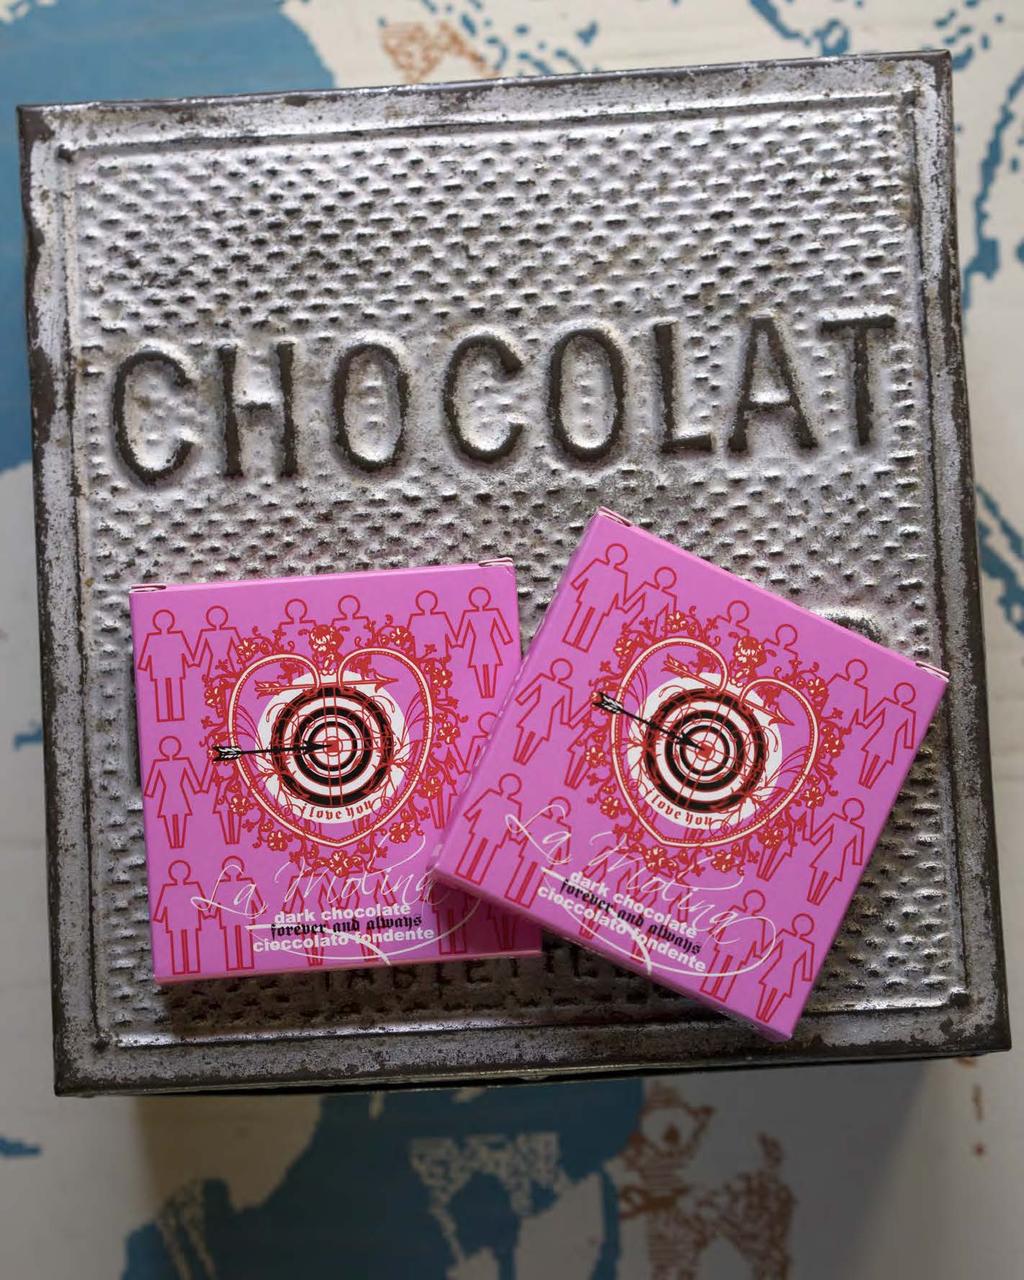 Astucci Love 6 3 23 cm peso netto 78 g 12 cioccolatini Art. 250 I love you cioccolato al latte 40% cacao min. con infuso di cannella Art. 251 Fiori cioccolato fondente 60% cacao min.